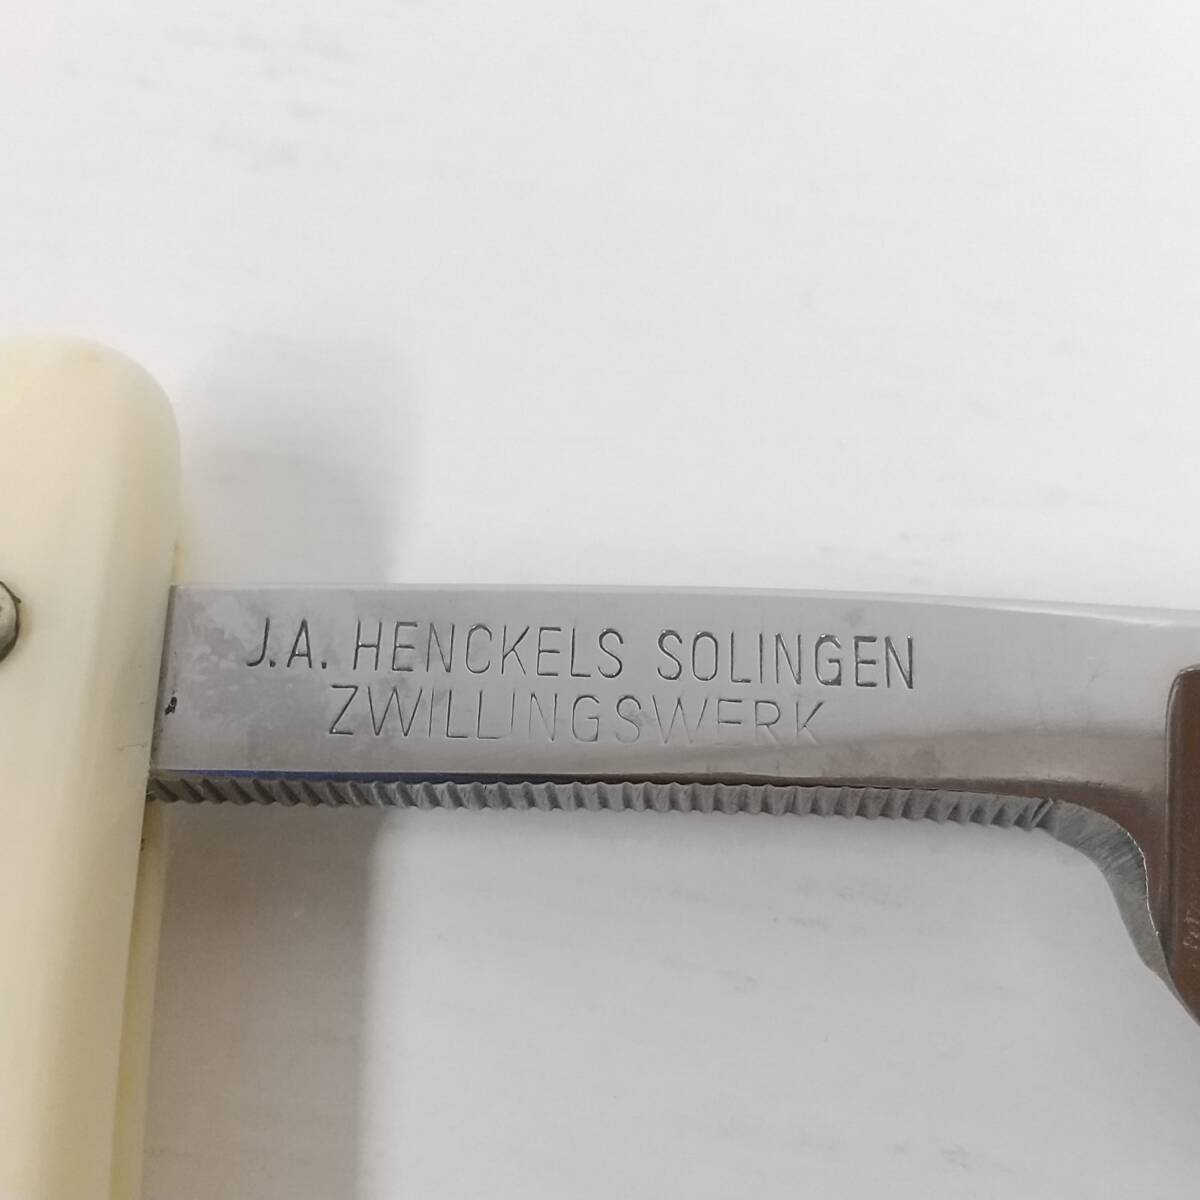 1844 J.A. HENCKELS SOLINGEN ZWILLINGS WERK ヘンケルス ゾーリンゲン ゴールド 70 1/2 西洋剃刀 カミソリ 髭剃りの画像8